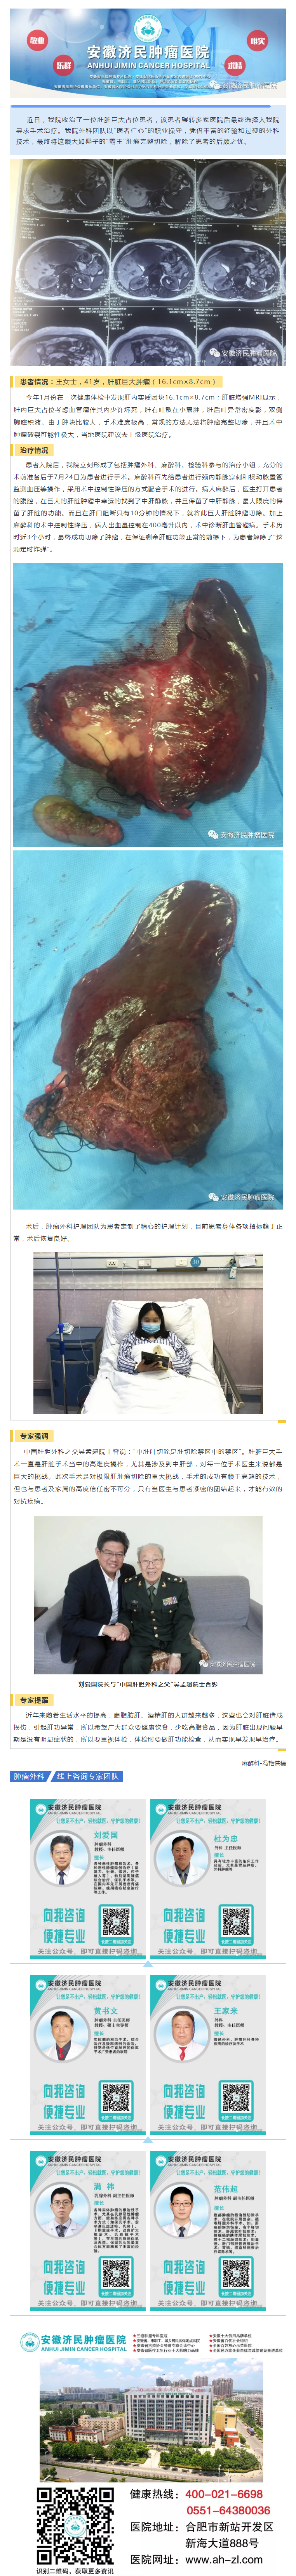 【技术突破】一例肝脏巨大肿瘤的惊险手术之旅.png